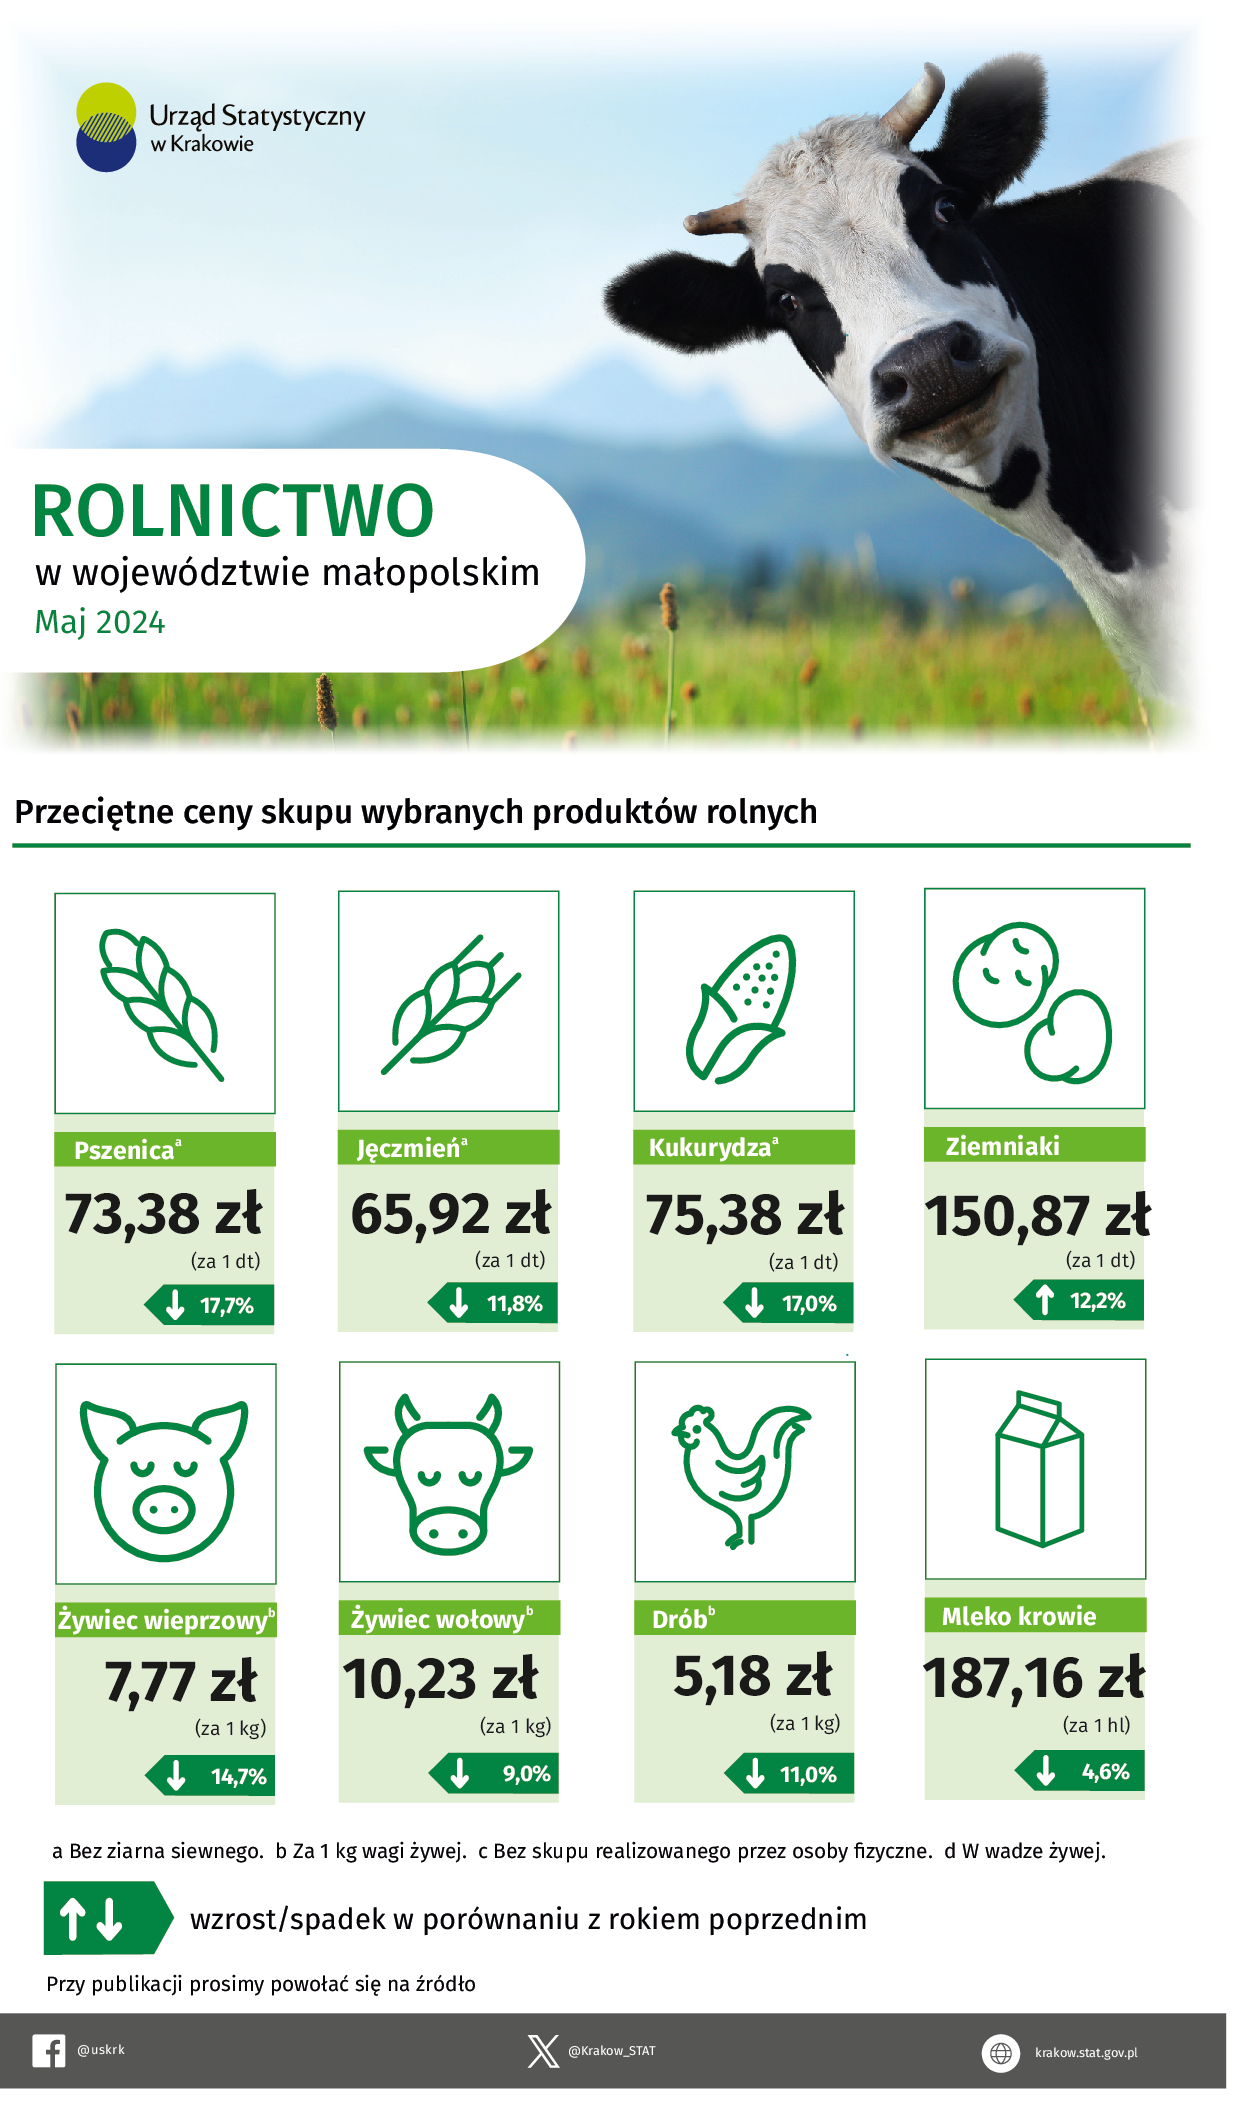 Rolnictwo w województwie małopolskim – infografika danymi z rolnictwa za maj 2024